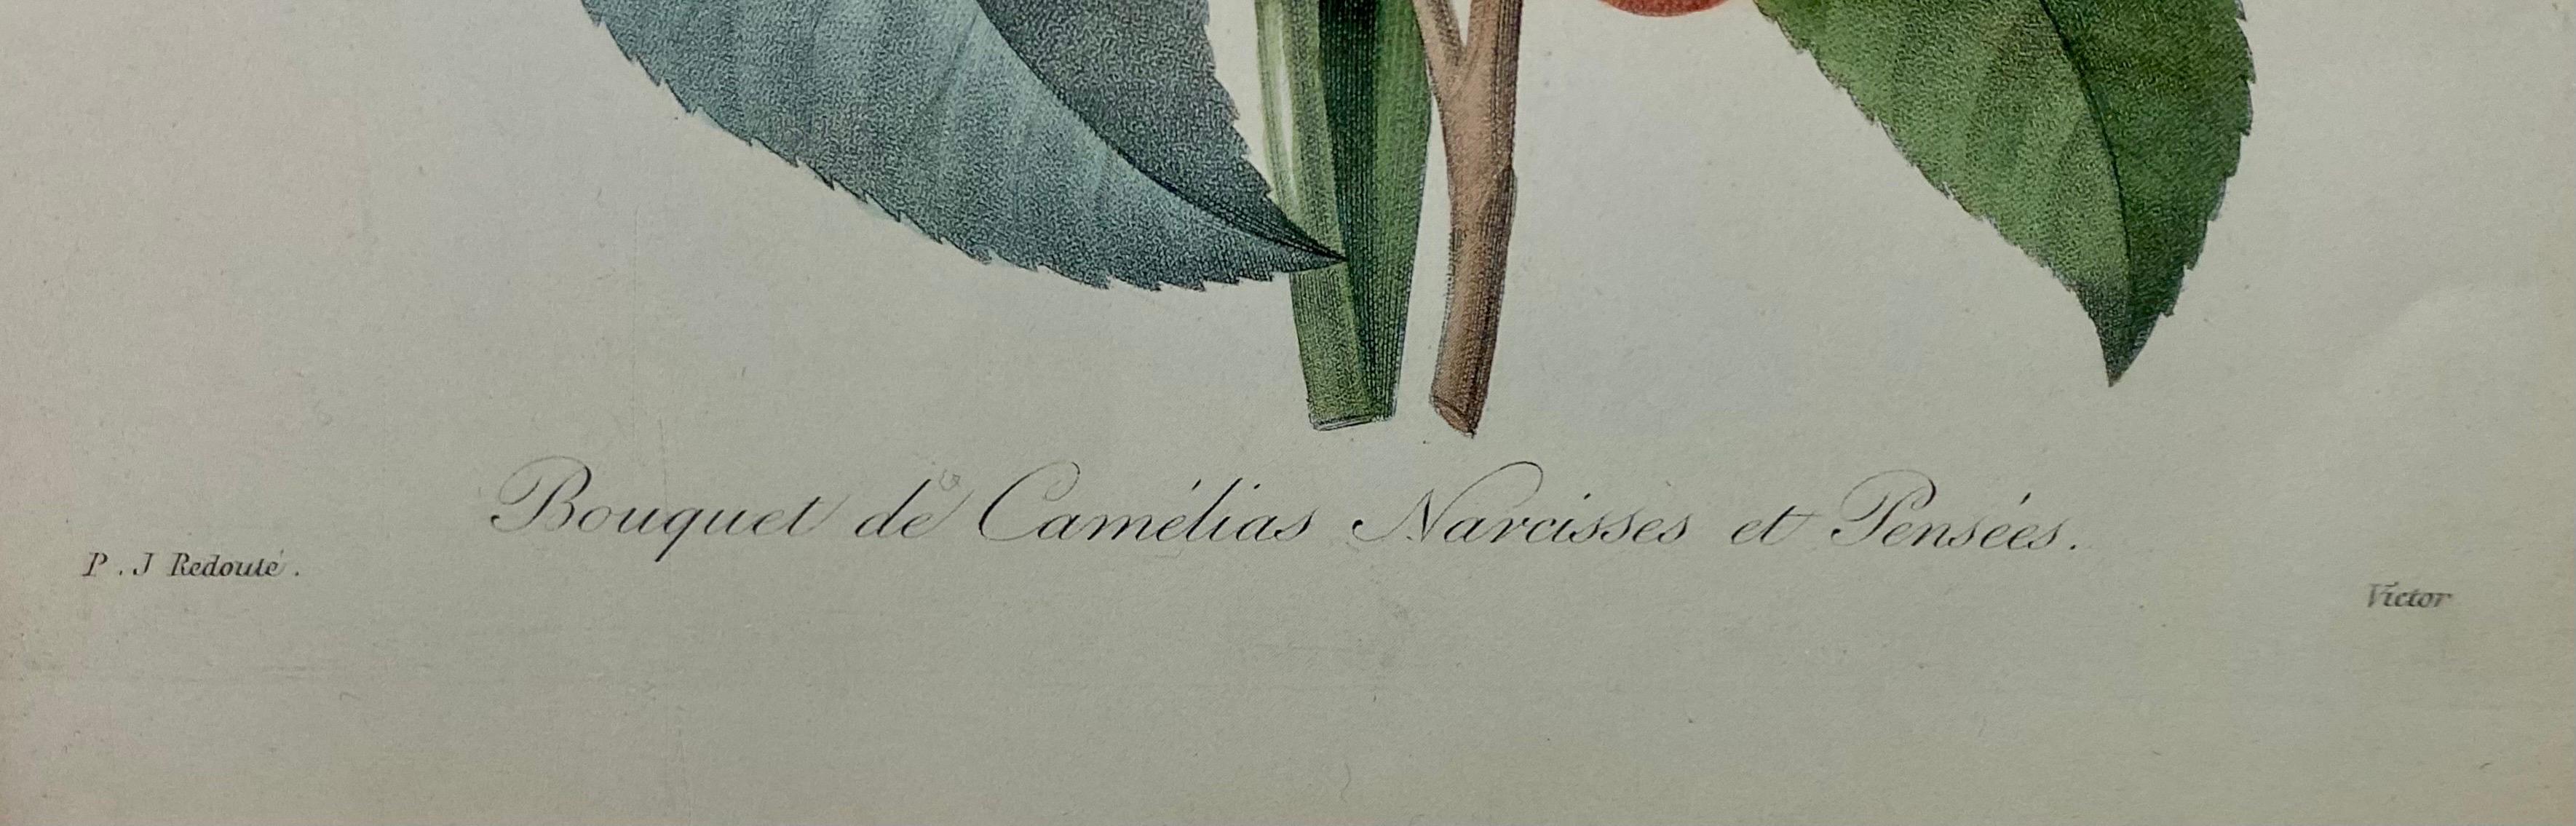 Pierre-Joseph Redoute Anemone Simple & Bouquet De Camelias, Narcisses Et Pensees For Sale 1